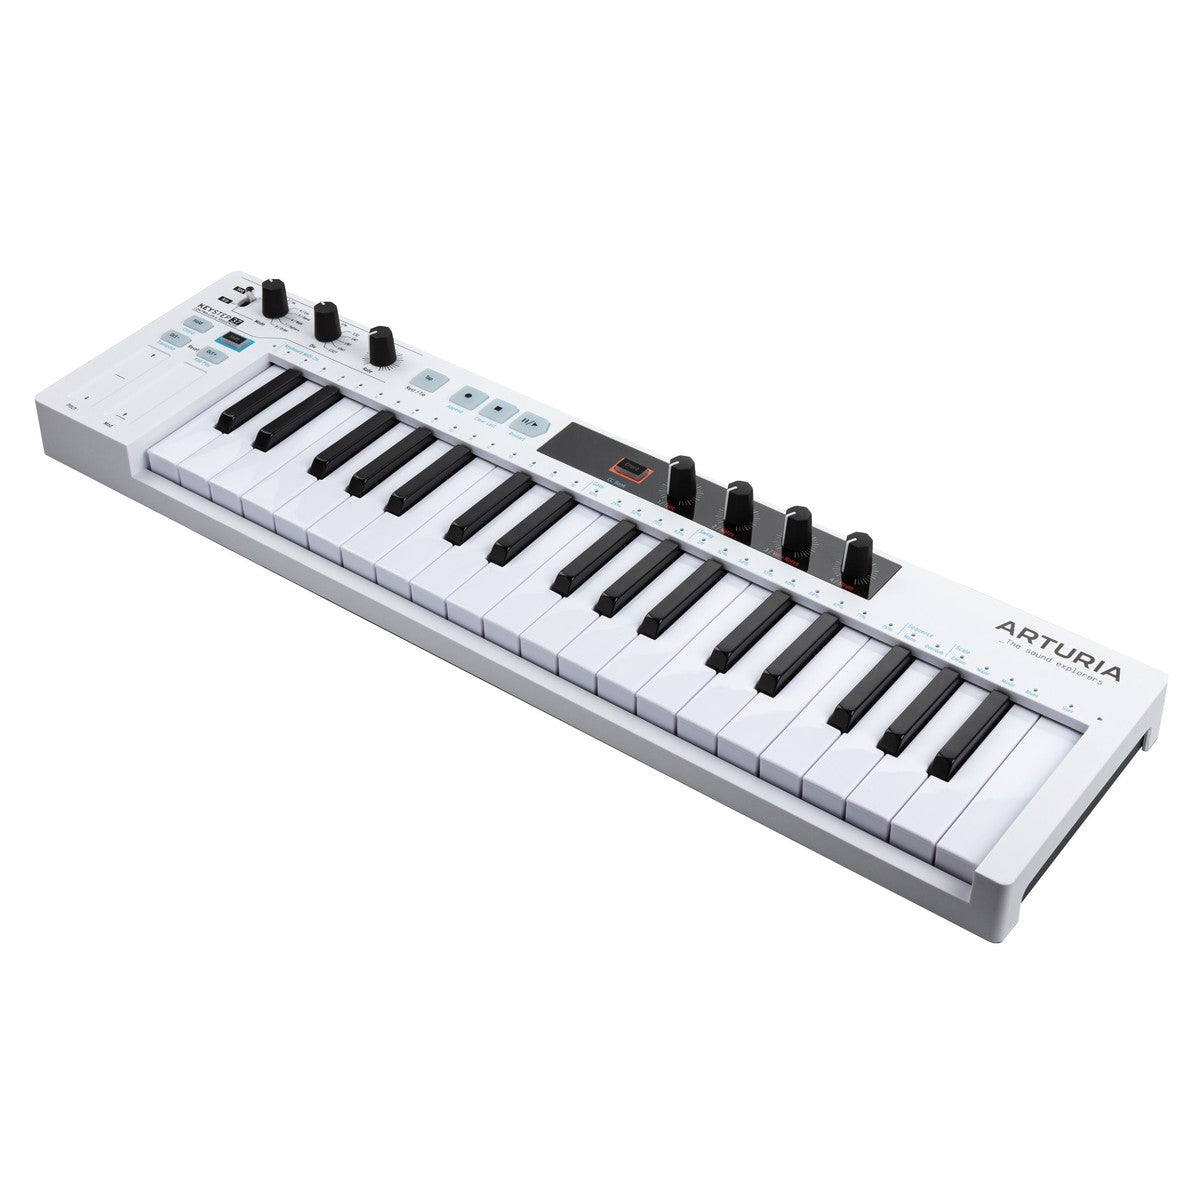 MIDI Keyboard Controller Arturia KeyStep 37